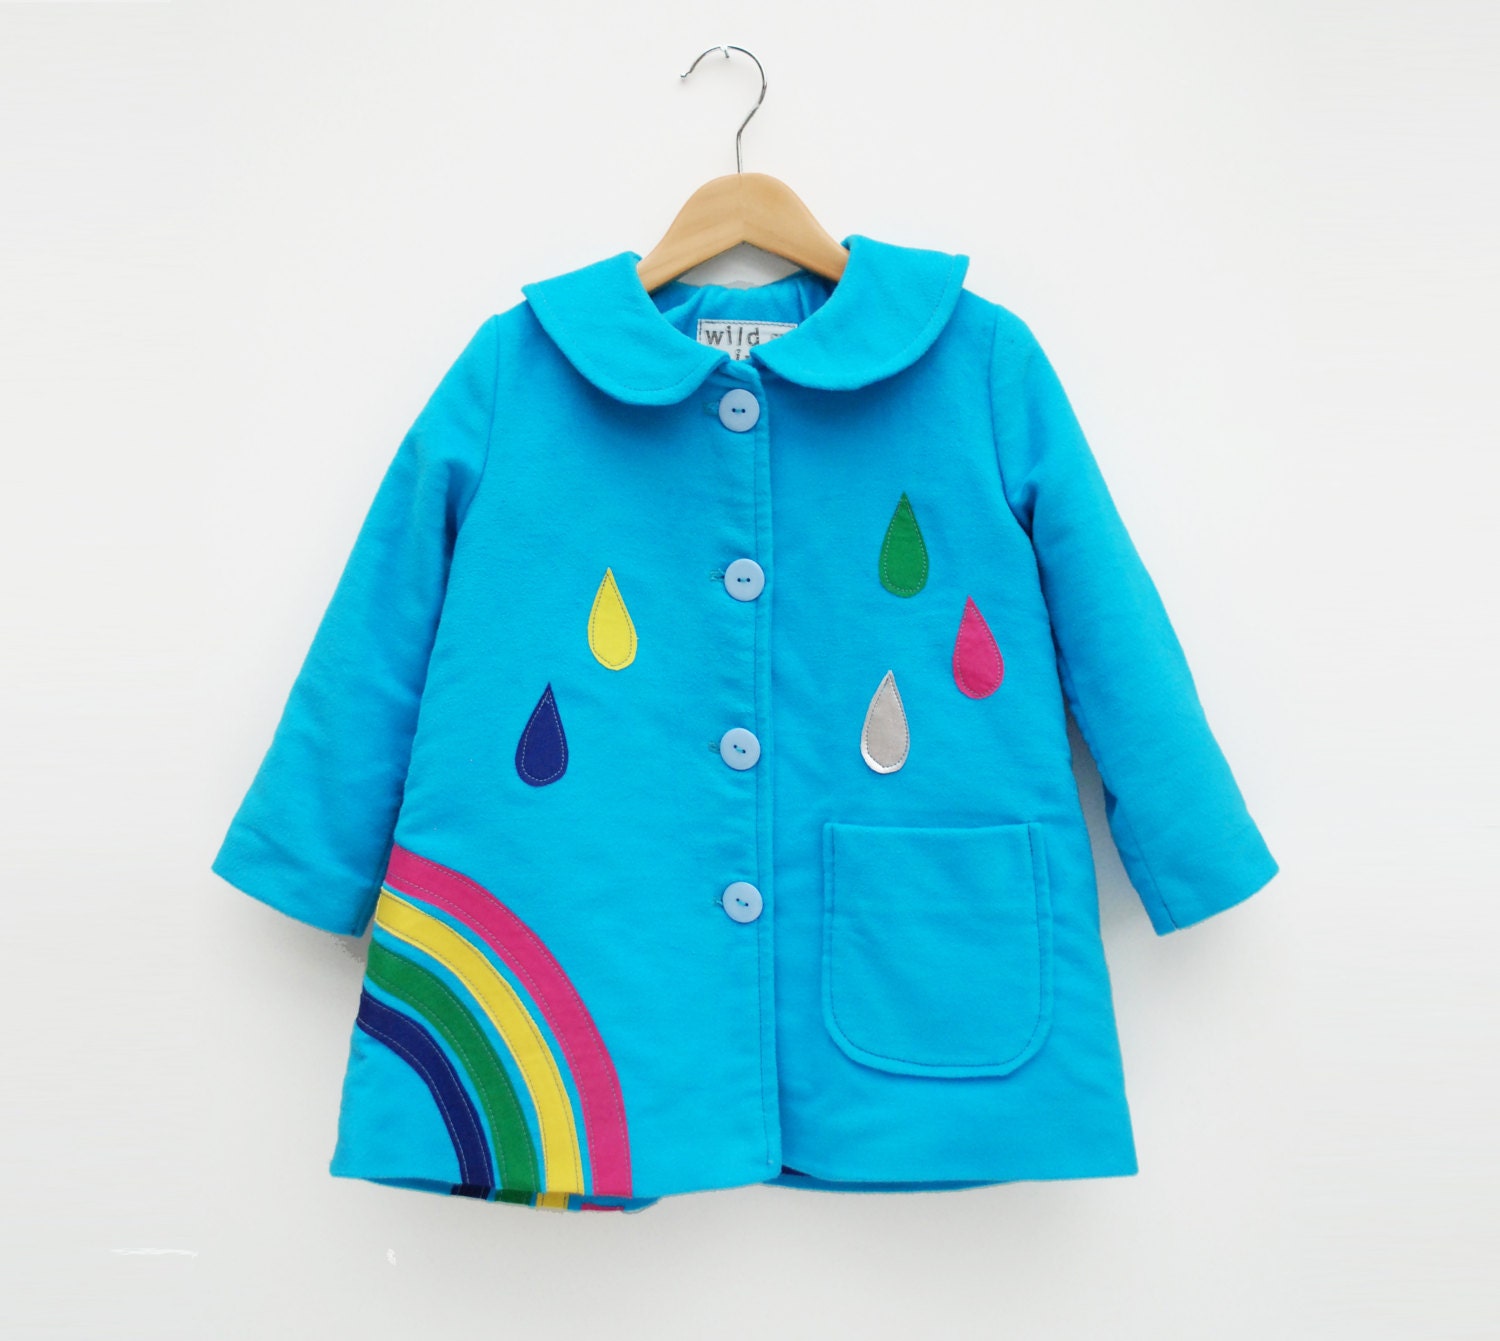 Kleding Meisjeskleding Jacks & Jassen kinderen in rijke blauwe molskin Regenboog vacht jas voor peuters 